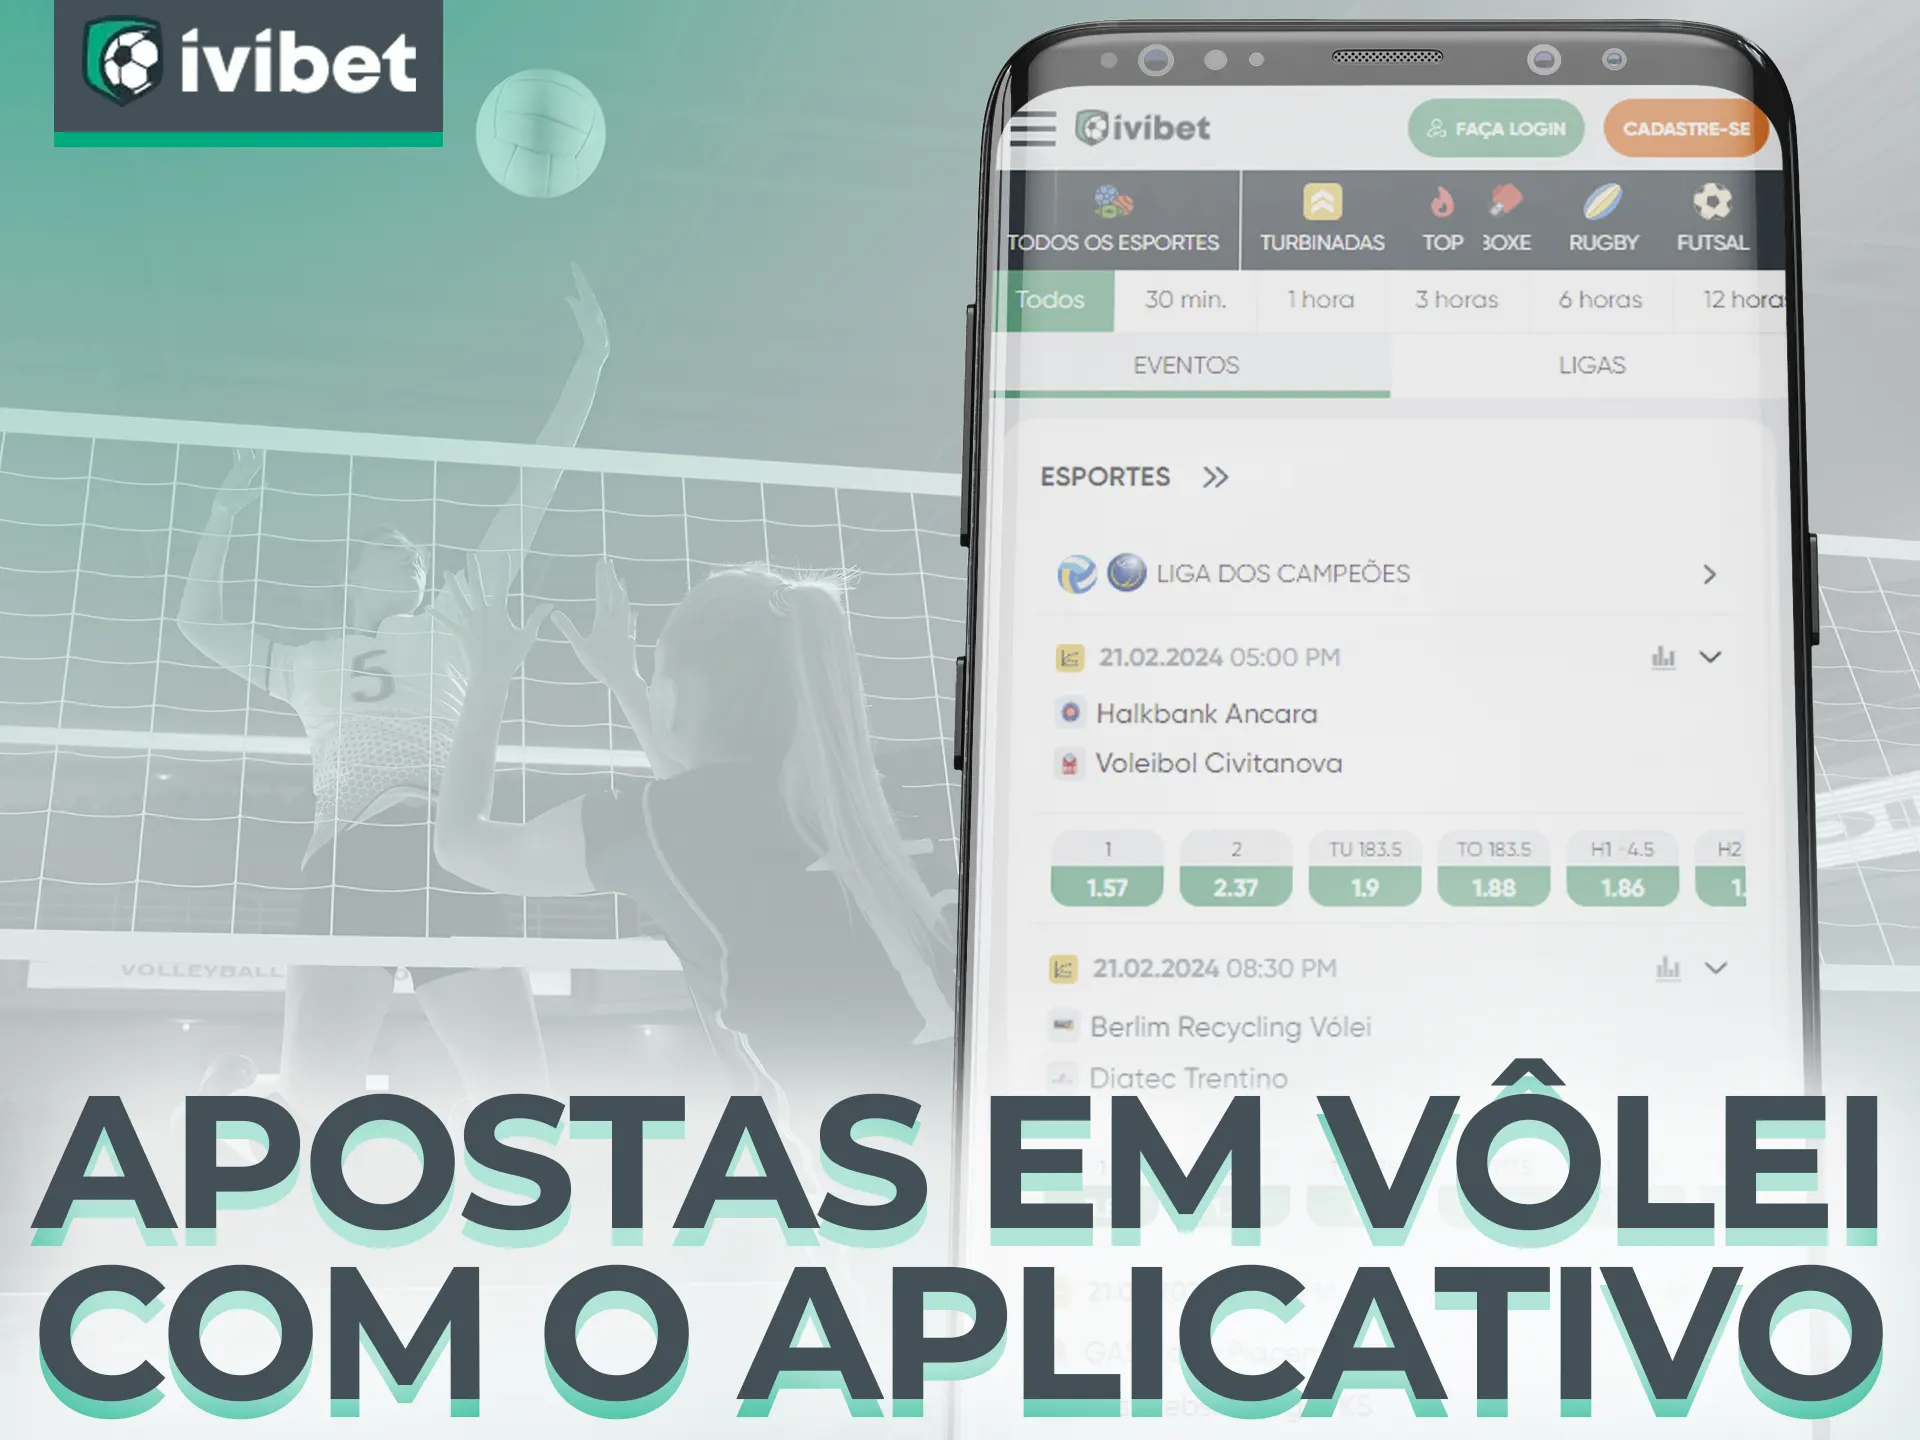 Apostar no voleibol usando o aplicativo Ivibet é conveniente e flexível.